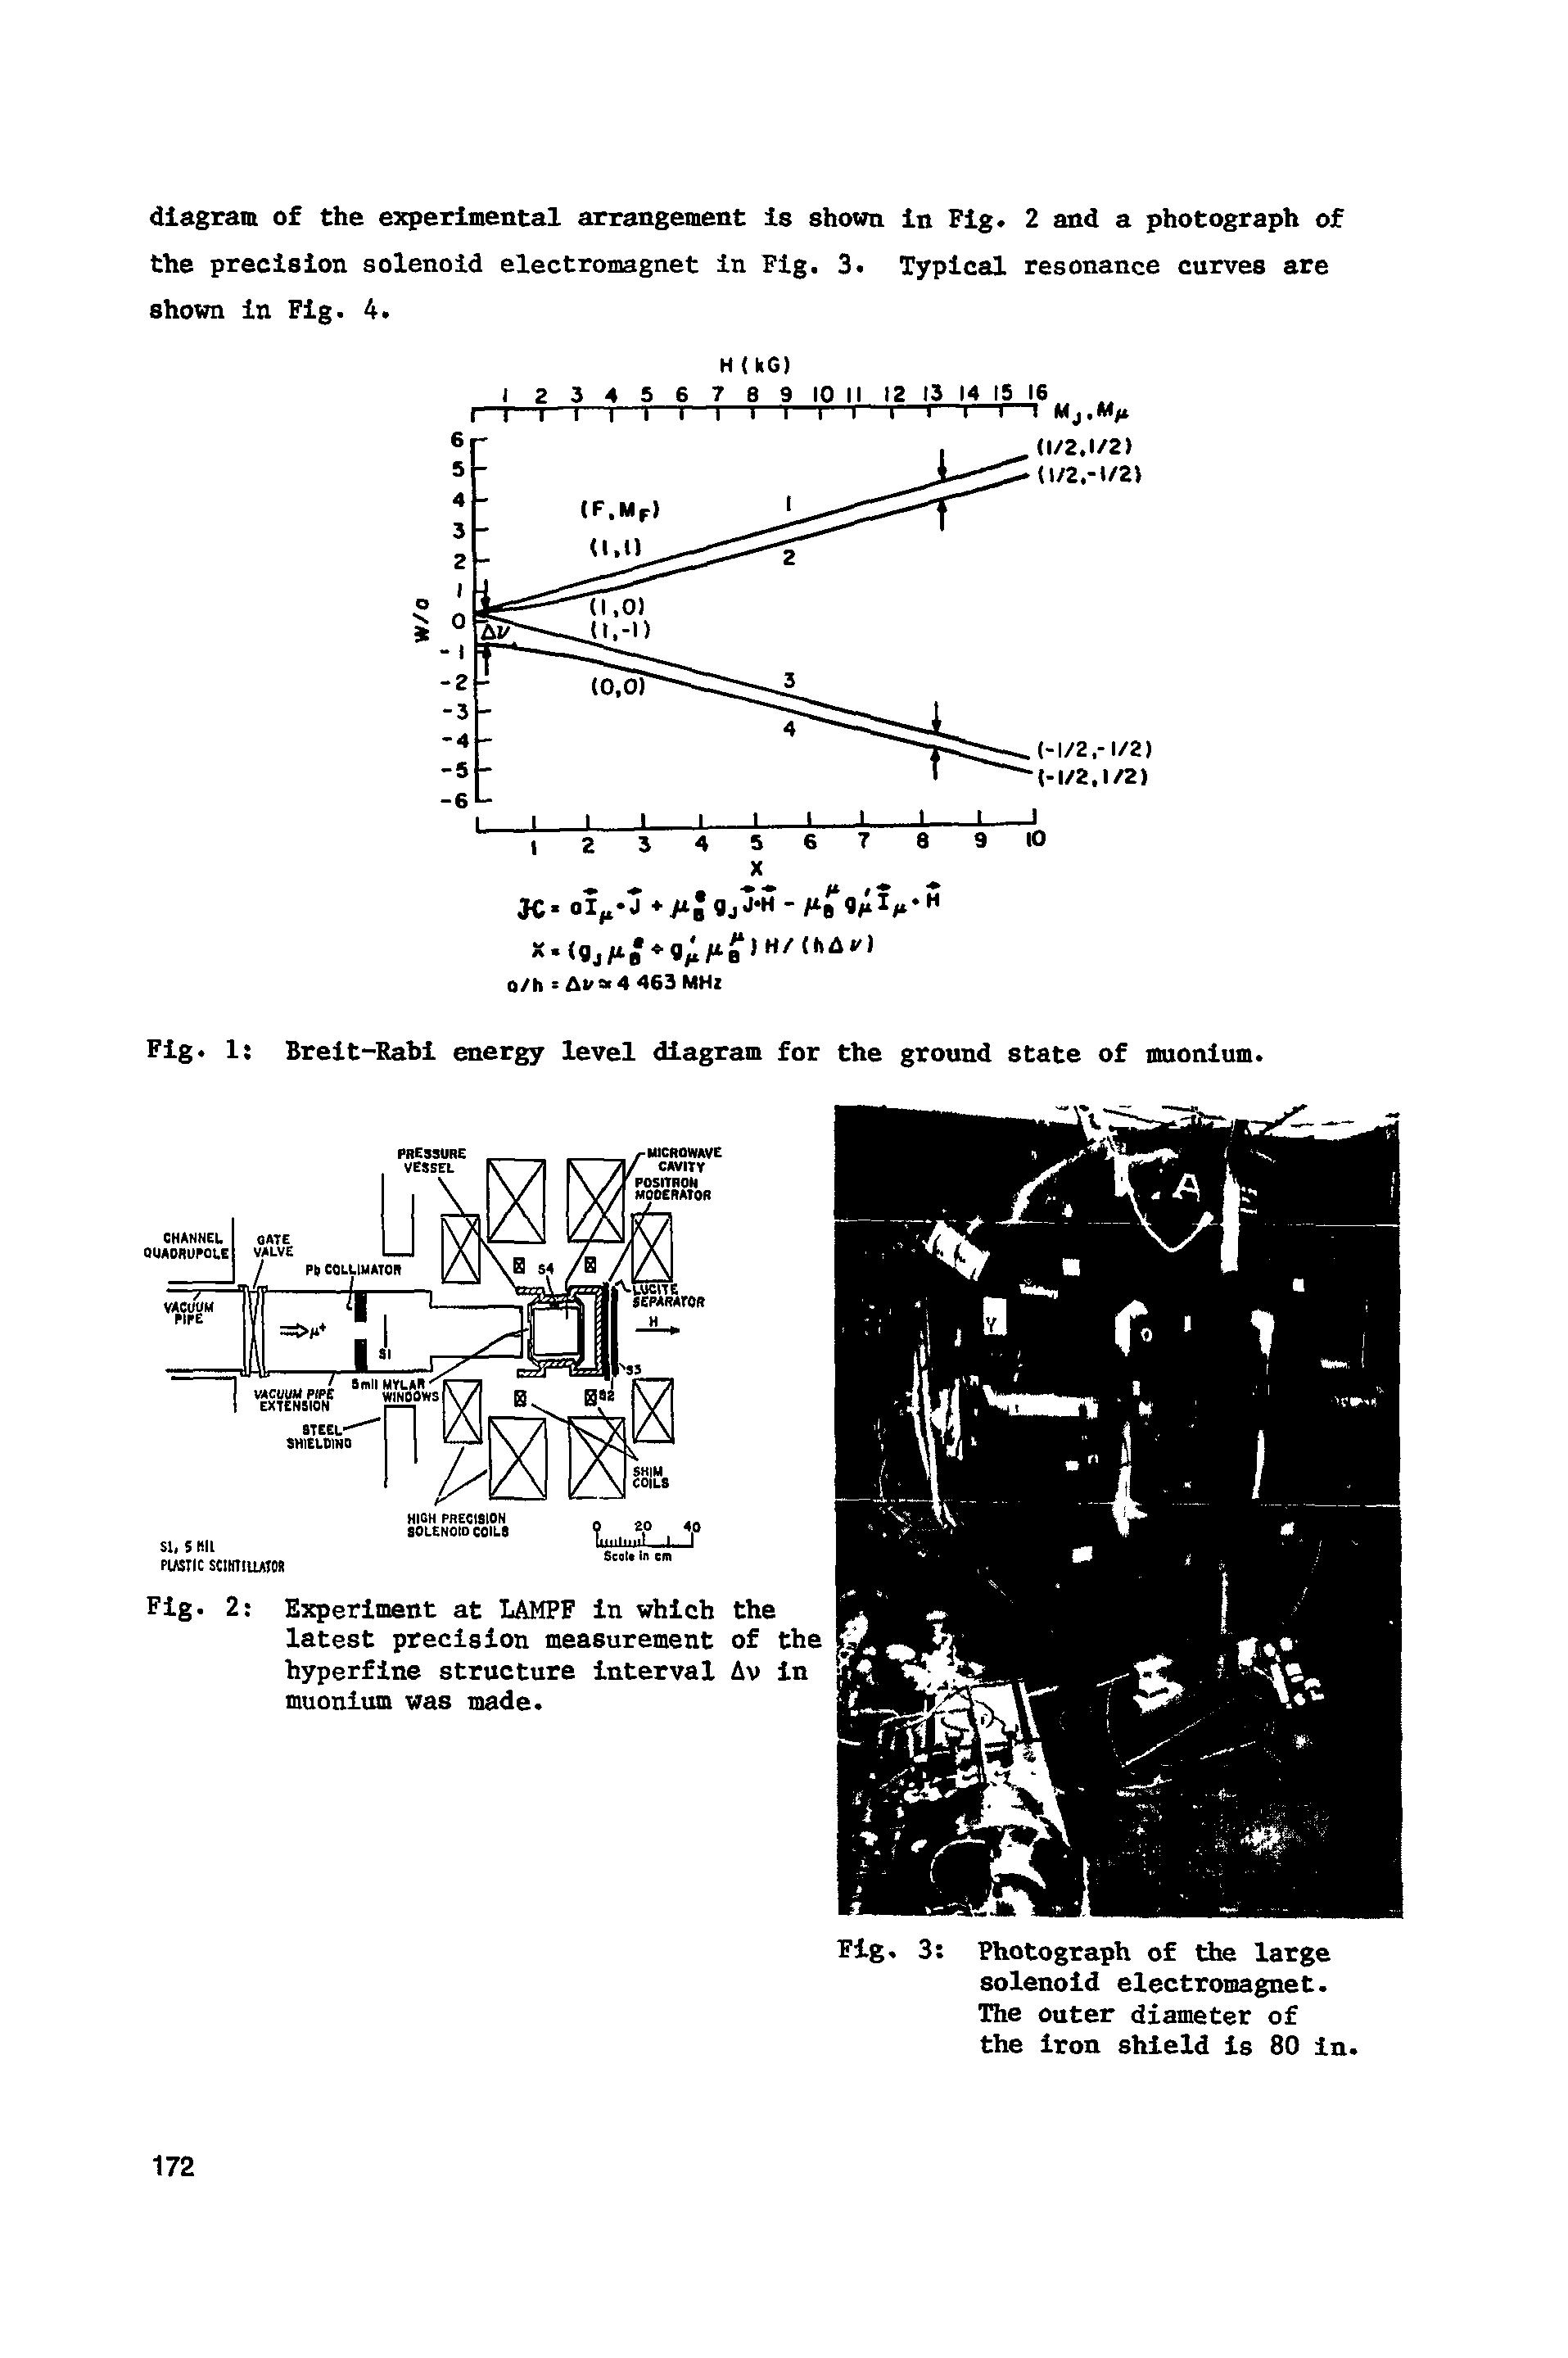 Fig. 1 Breit-Rabi energy level diagram for the ground state of muonium.